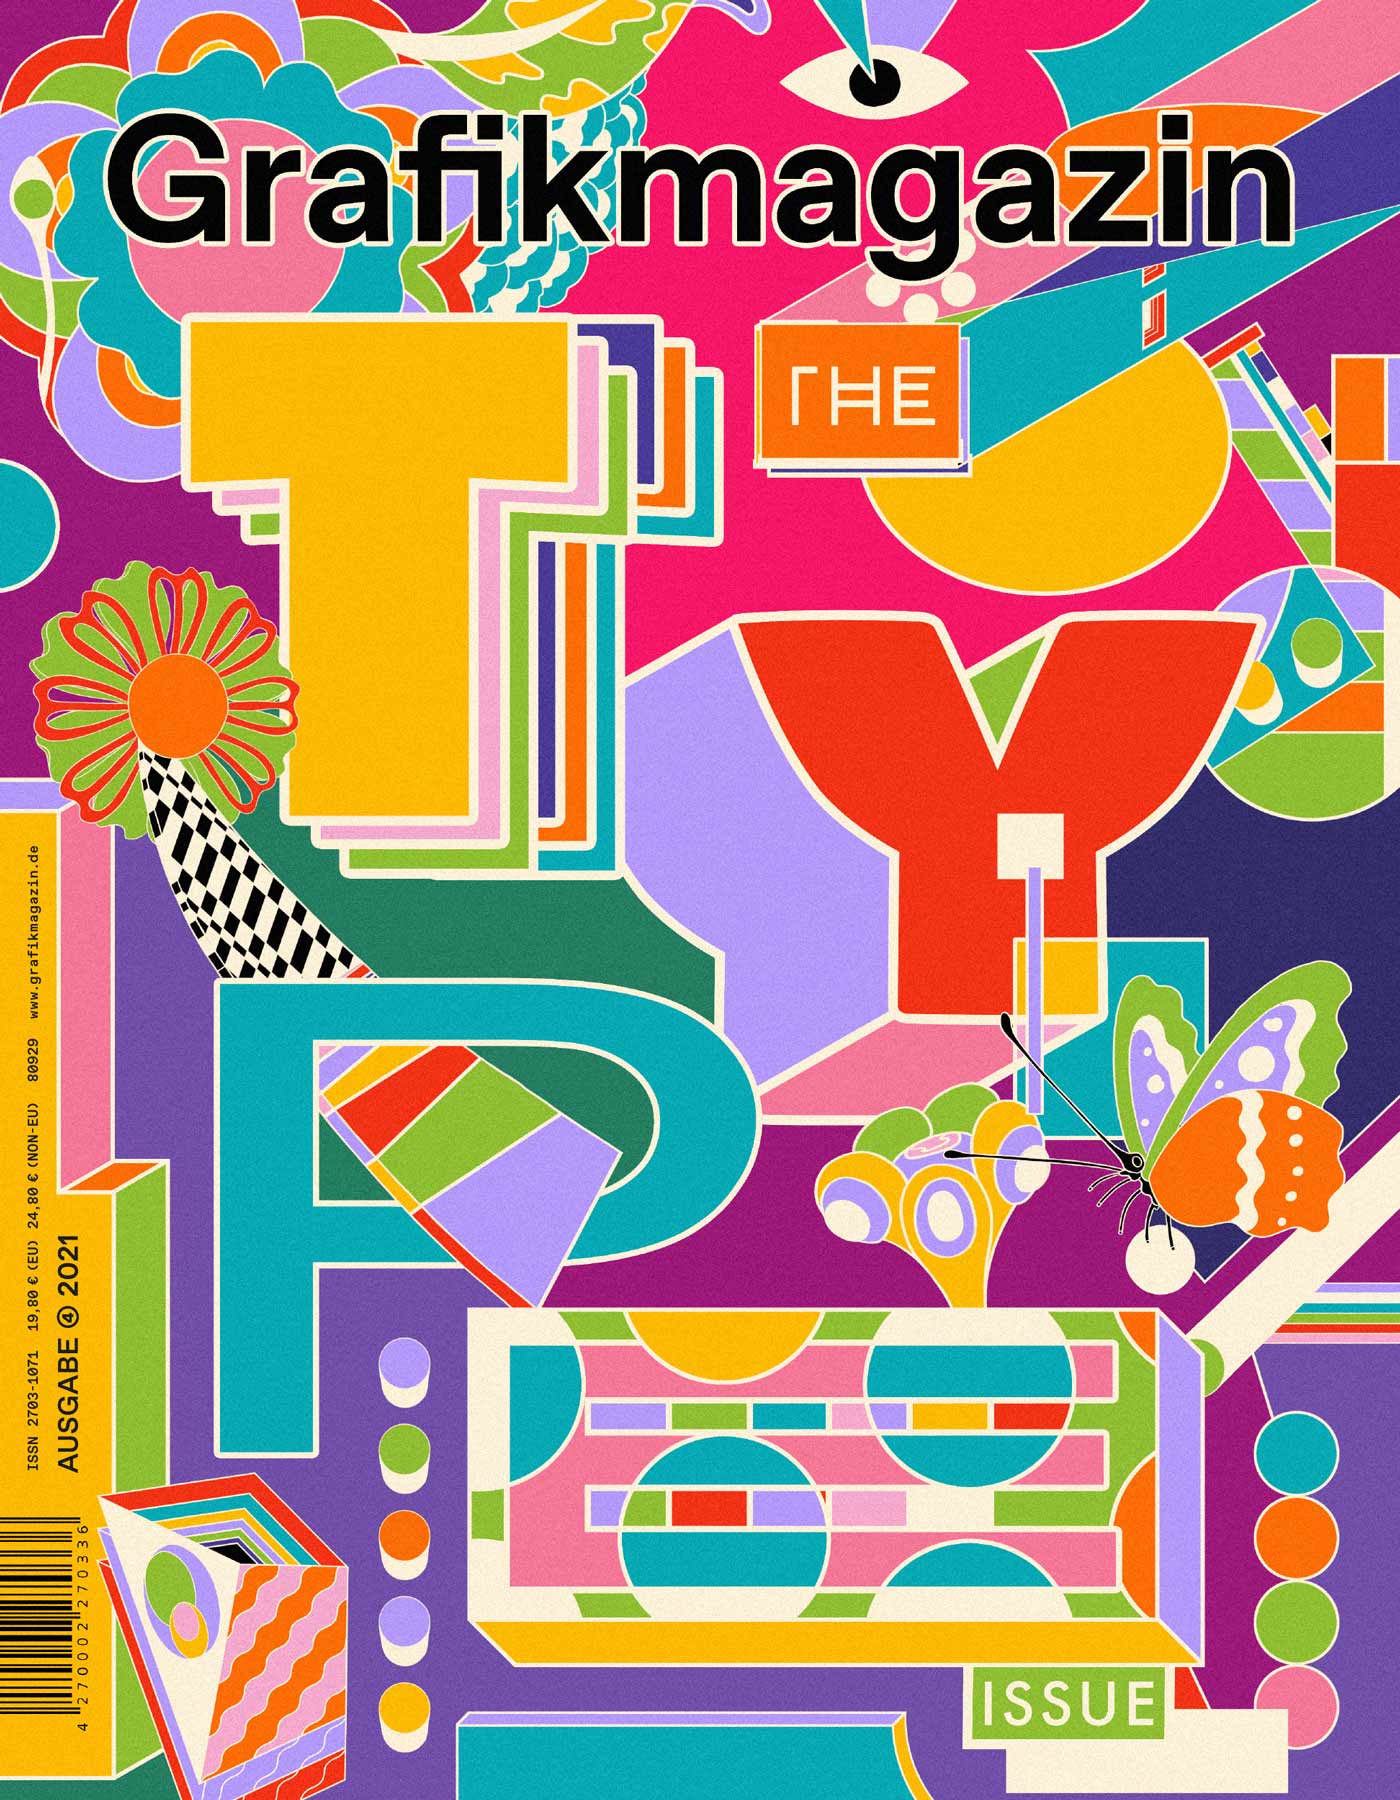 Grafikmagazin 04.21 – “Typography”